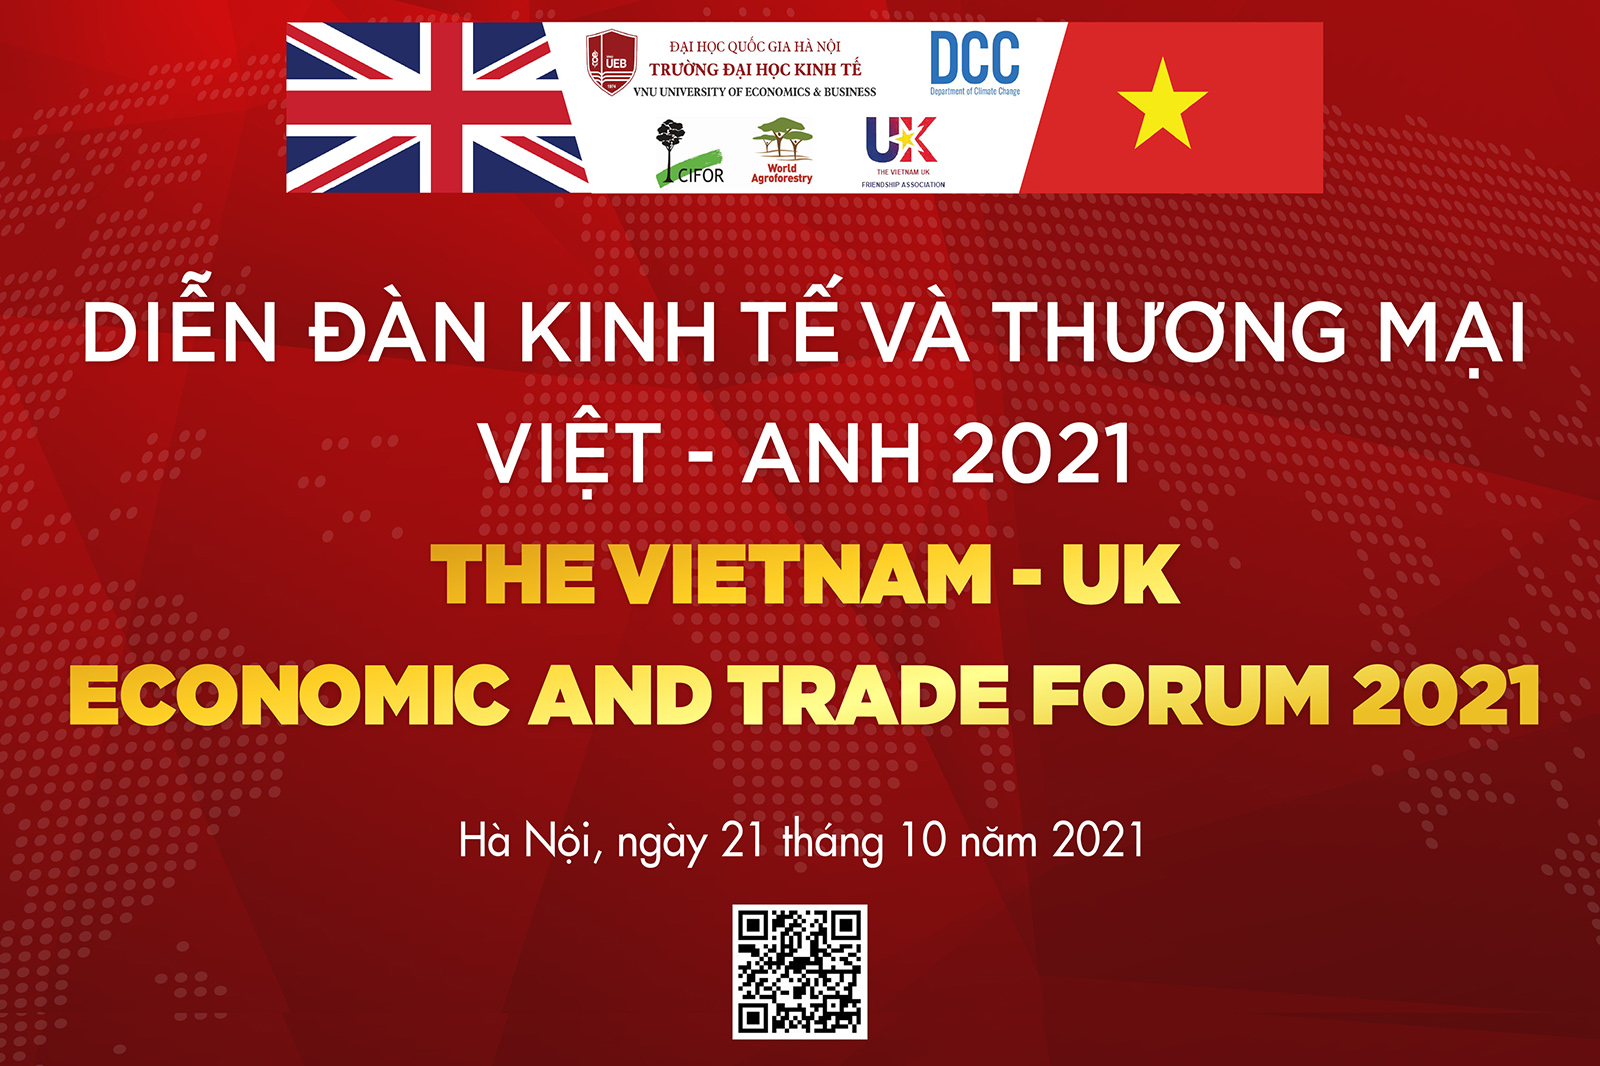 Diễn đàn kinh tế và thương mại Việt - Anh